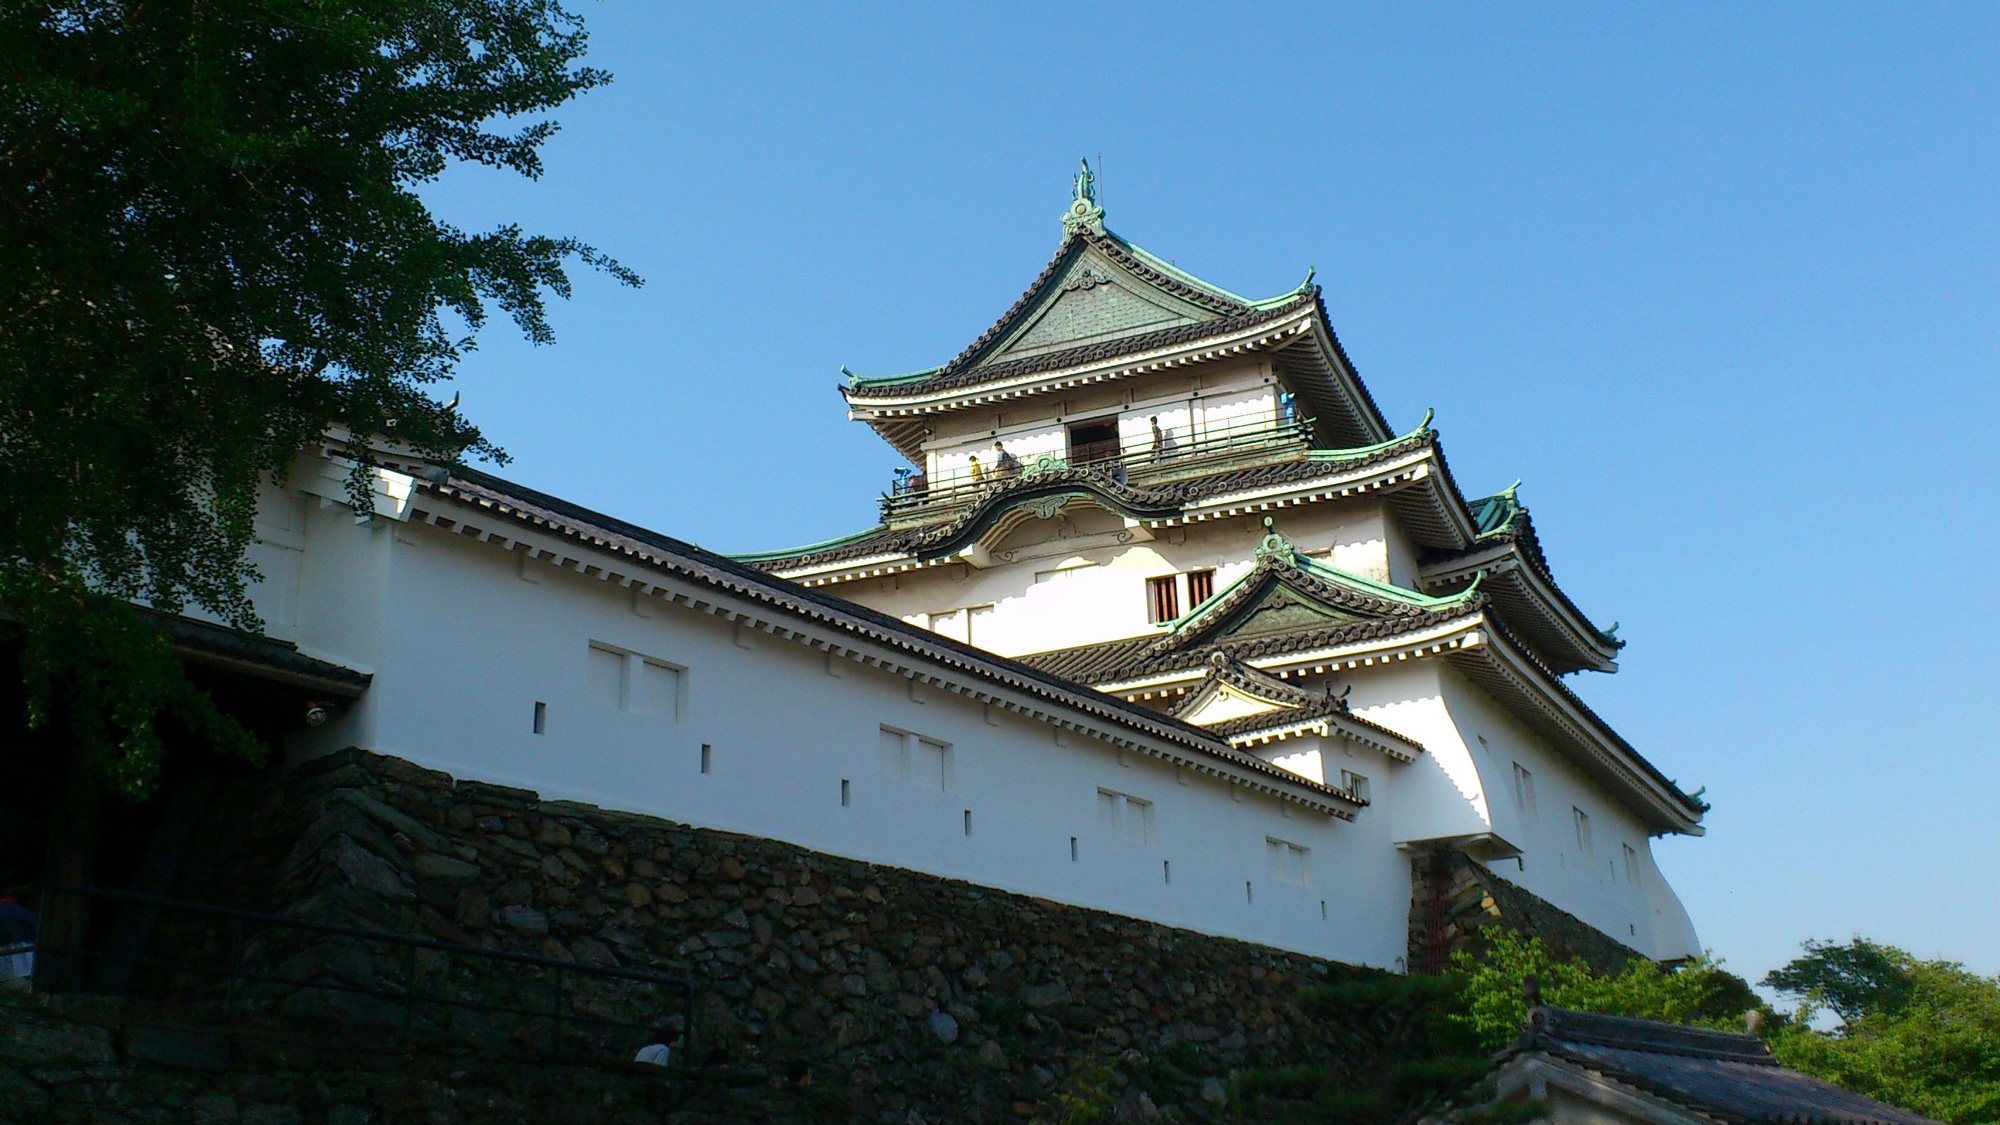 天守閣が立つ和歌山市のシンボル「和歌山城」。茶室や動物園もあり多岐に楽しめる（休暇村から車で30分）